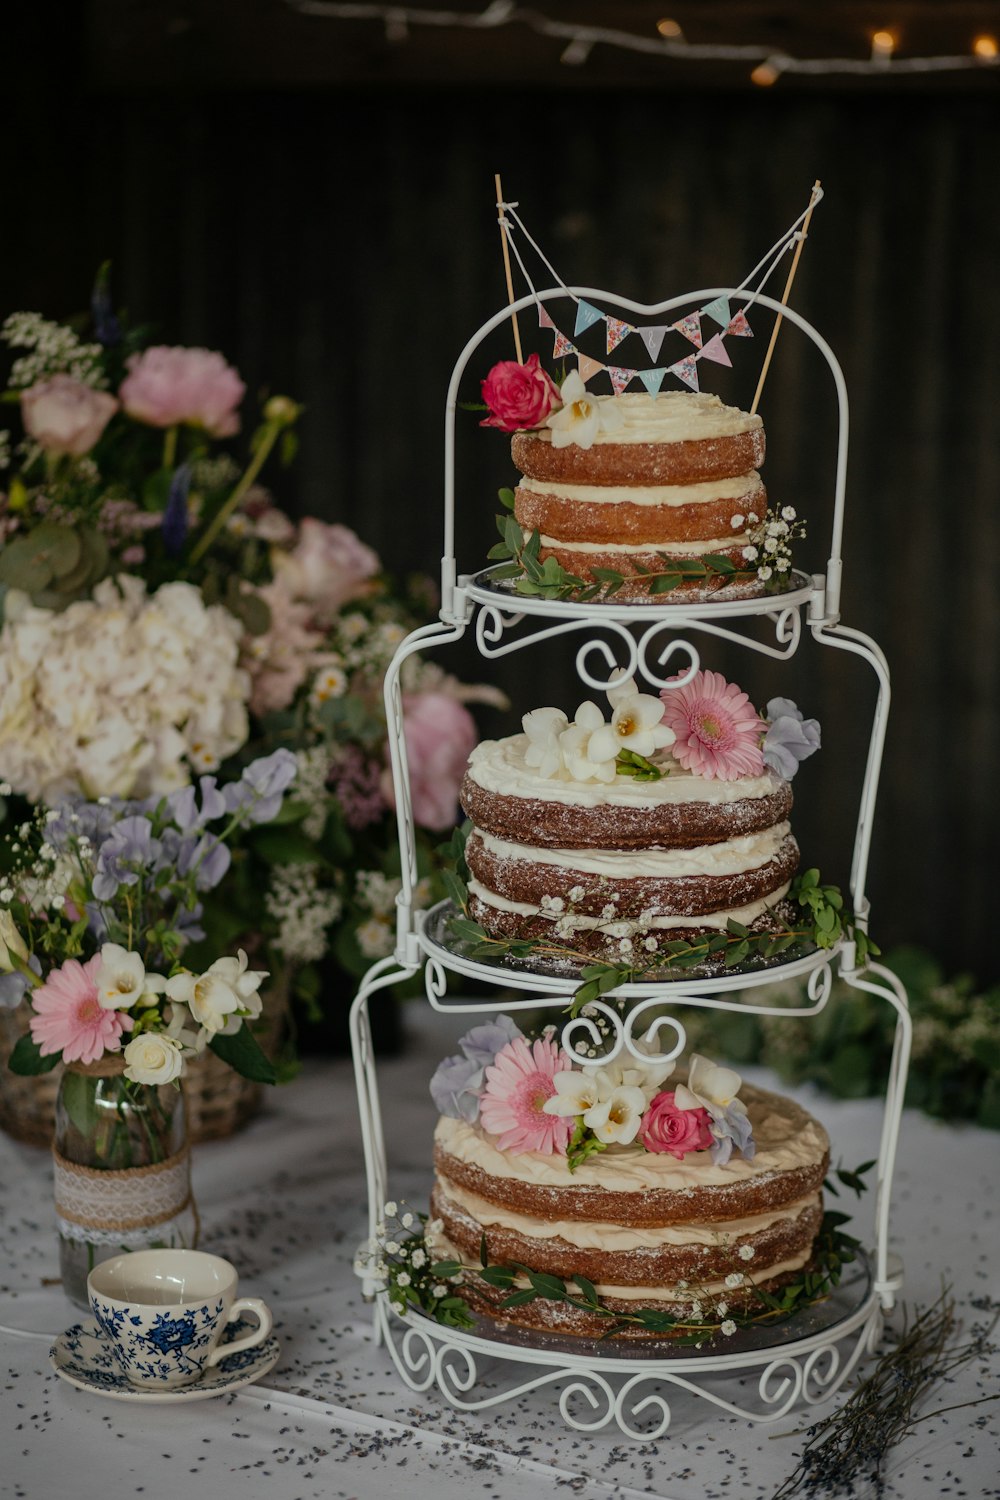 three cakes on white wire cake rack photo – Free Cake Image on Unsplash